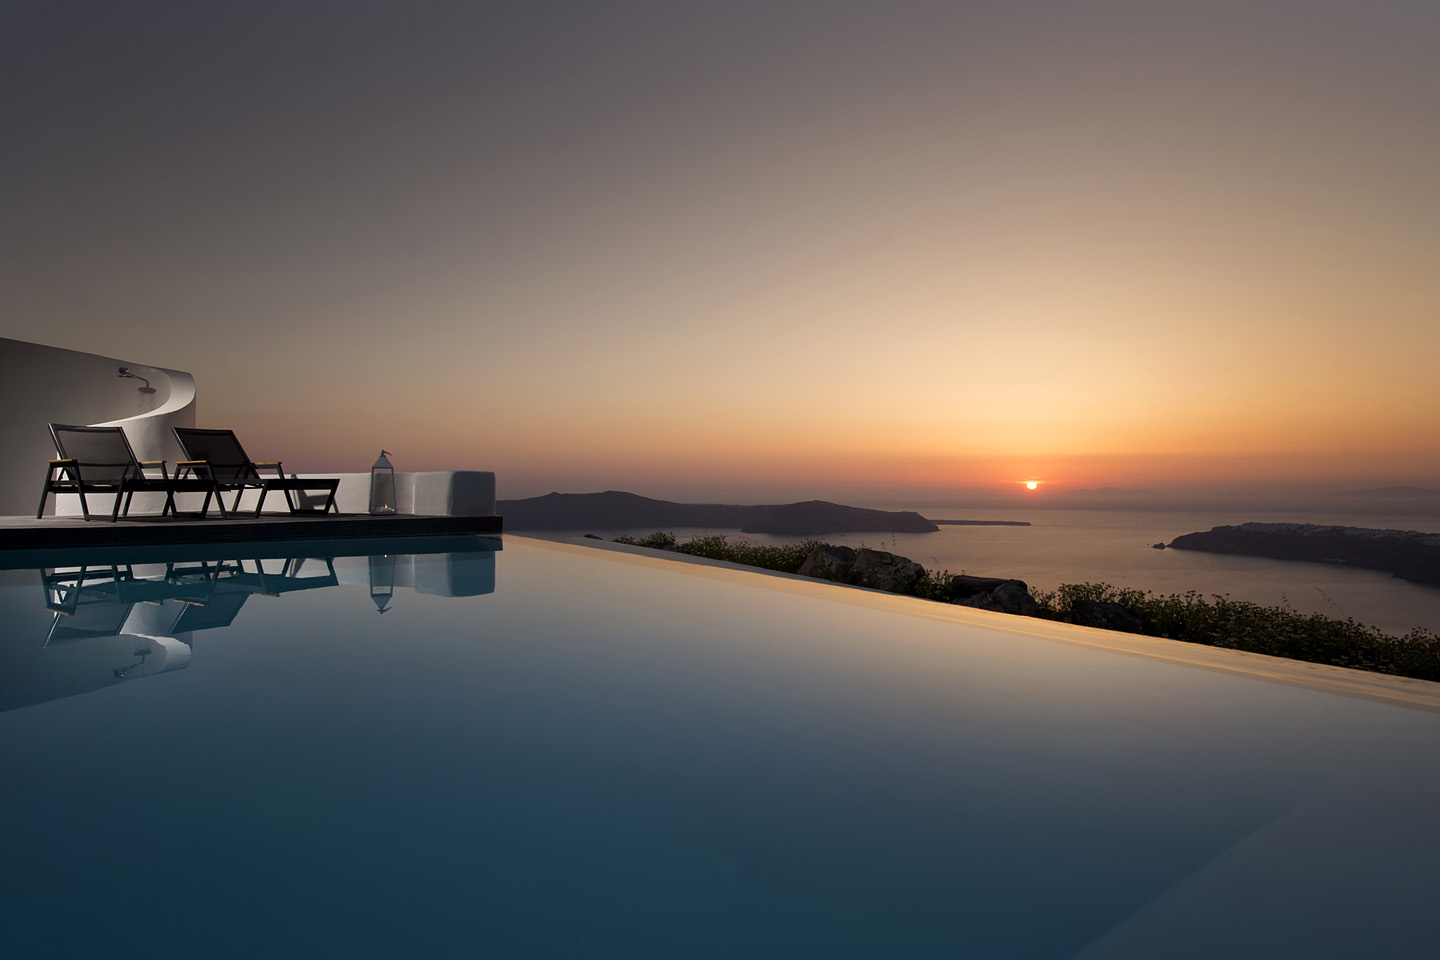 Σε αυτό το ξενοδοχείο στην Ελλάδα θα περάσουν μια εβδομάδα όλοι οι σταρ του Χόλιγουντ που είναι υποψήφιοι για Οσκαρ 